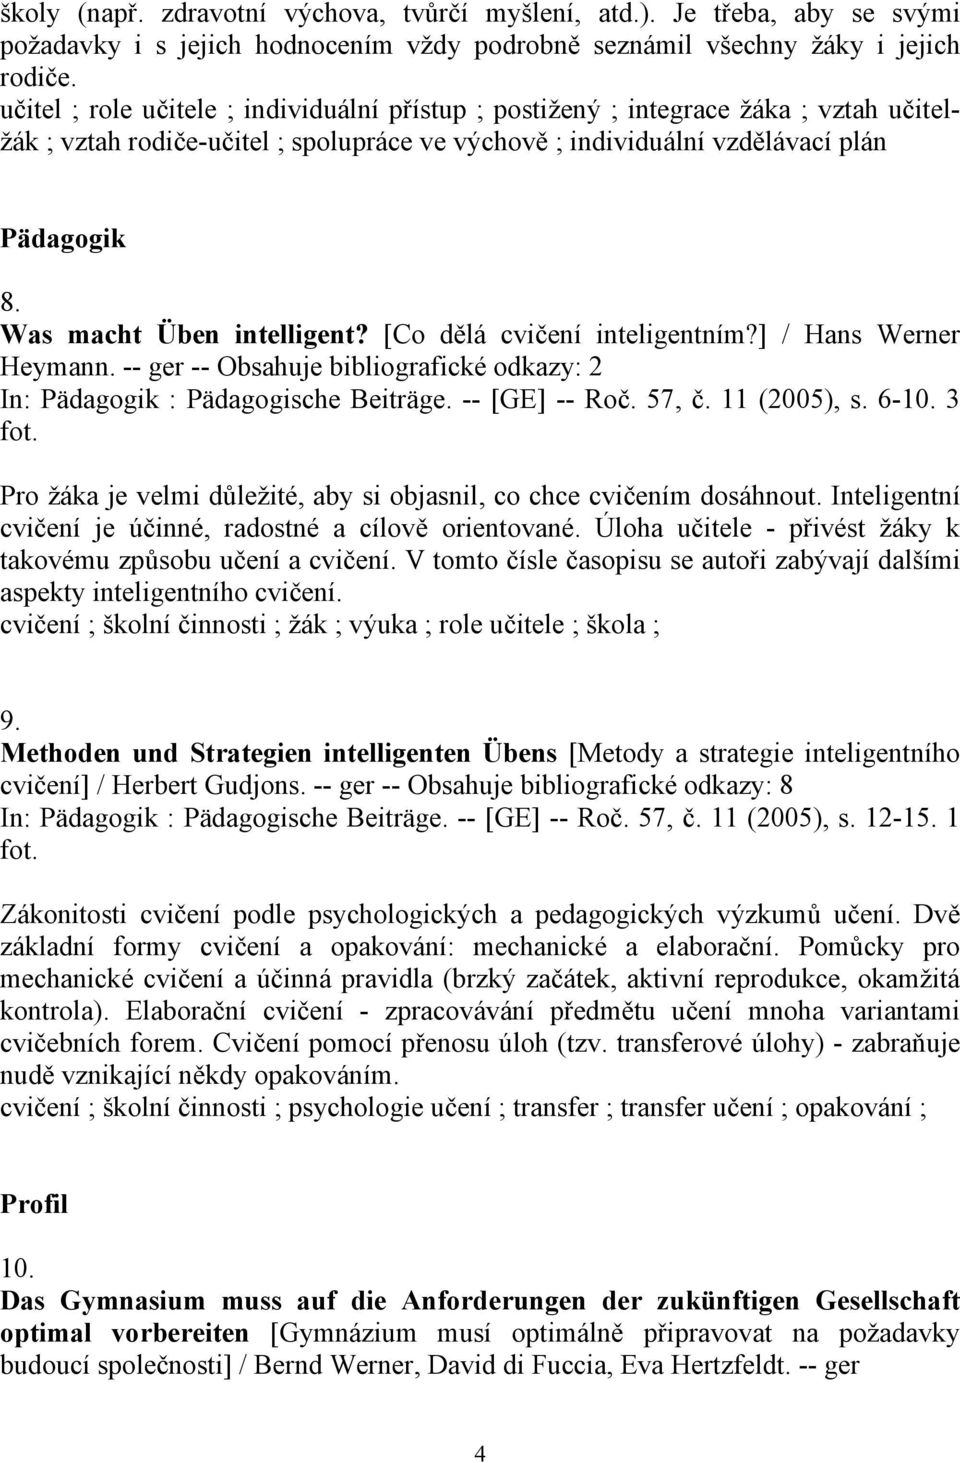 Was macht Üben intelligent? [Co dělá cvičení inteligentním?] / Hans Werner Heymann. -- ger -- Obsahuje bibliografické odkazy: 2 In: Pädagogik : Pädagogische Beiträge. -- [GE] -- Roč. 57, č.